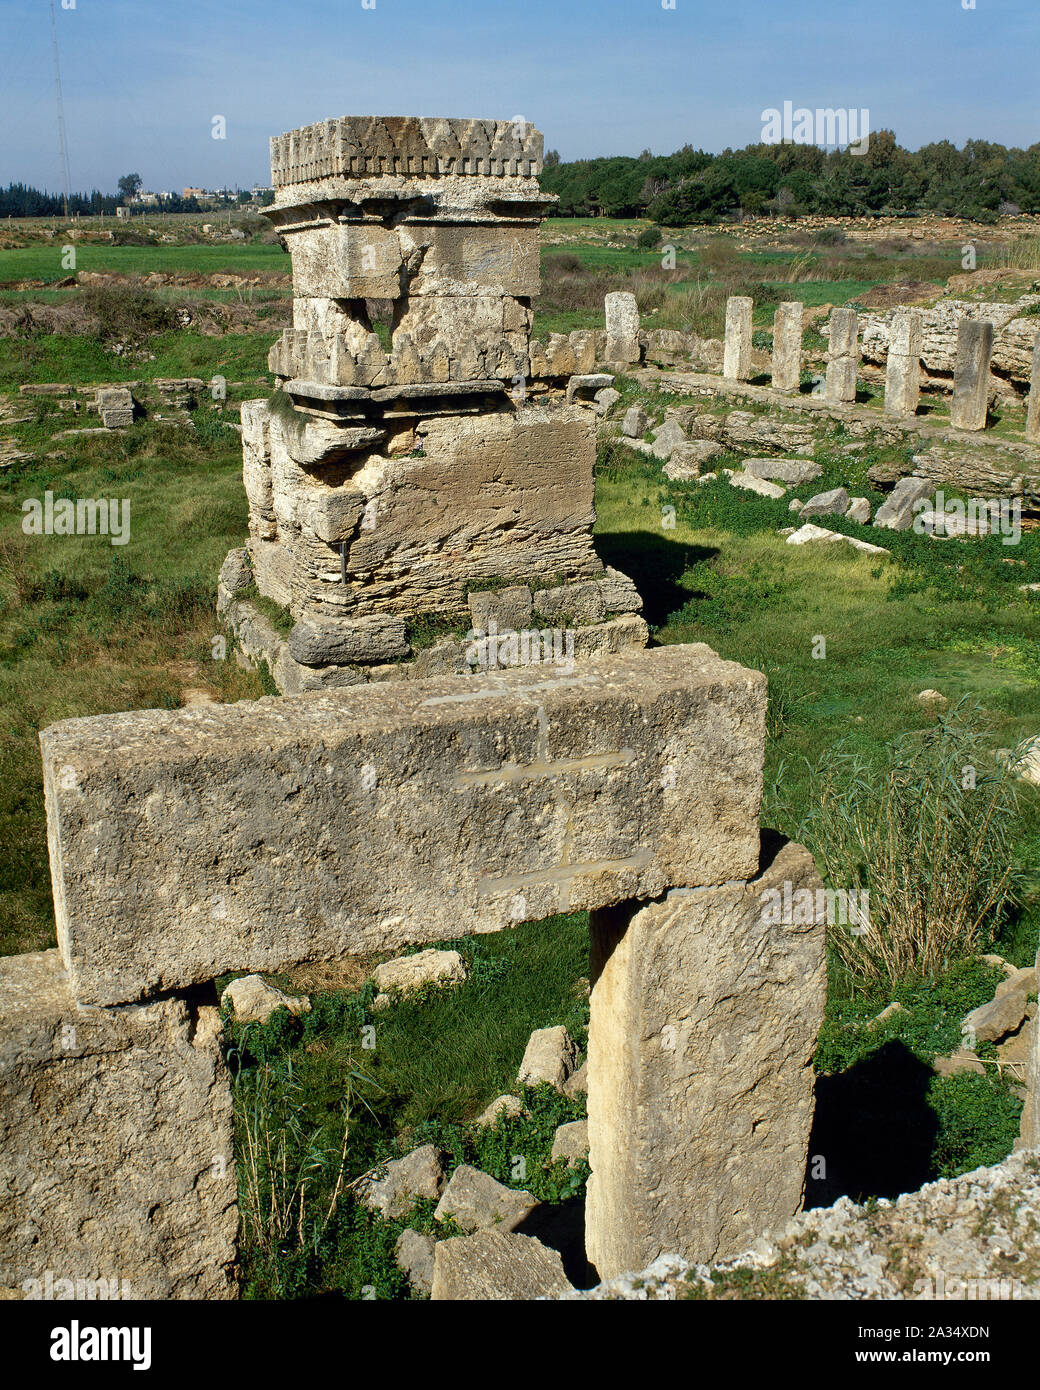 Syrien. Amrit oder Marathos. Alte phönizische Stadt im 3. Jahrtausend v. Chr. gegründet wurde. Tempel (Ma'Abed), Cella in der Mitte des Hofes. Foto vor dem syrischen Bürgerkrieg. Stockfoto